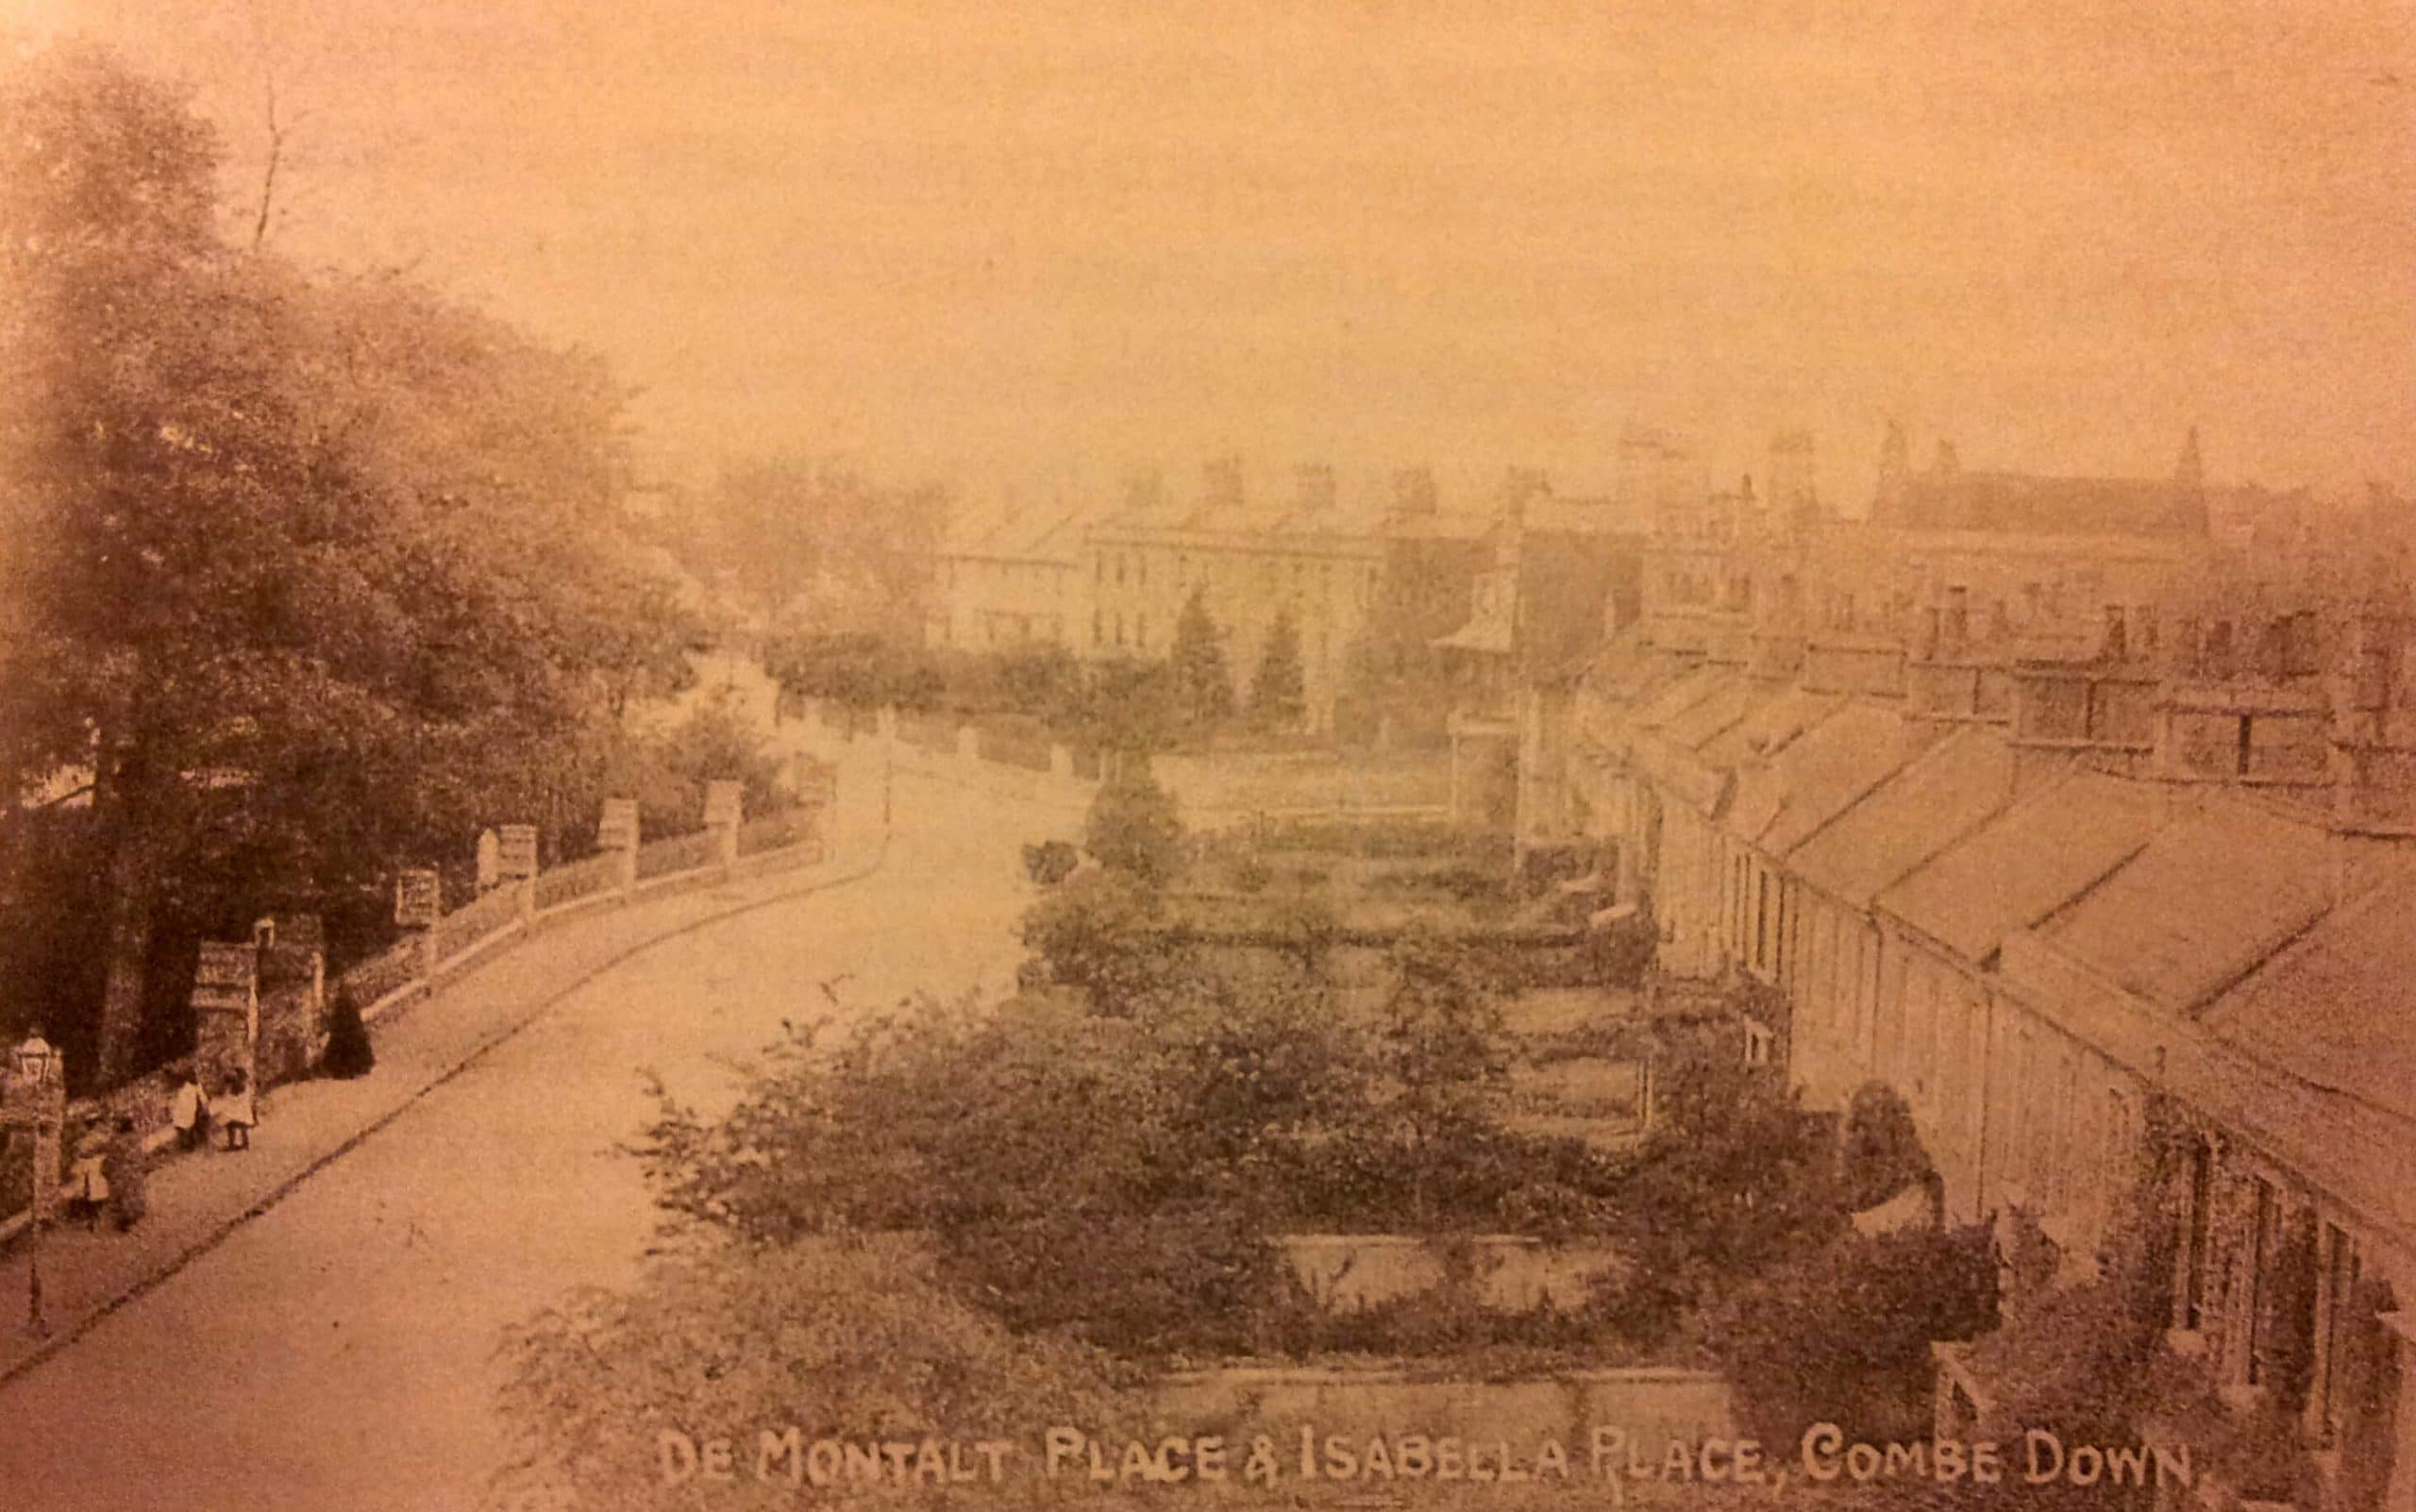 de Montalt Place and Isabella Place about 1910